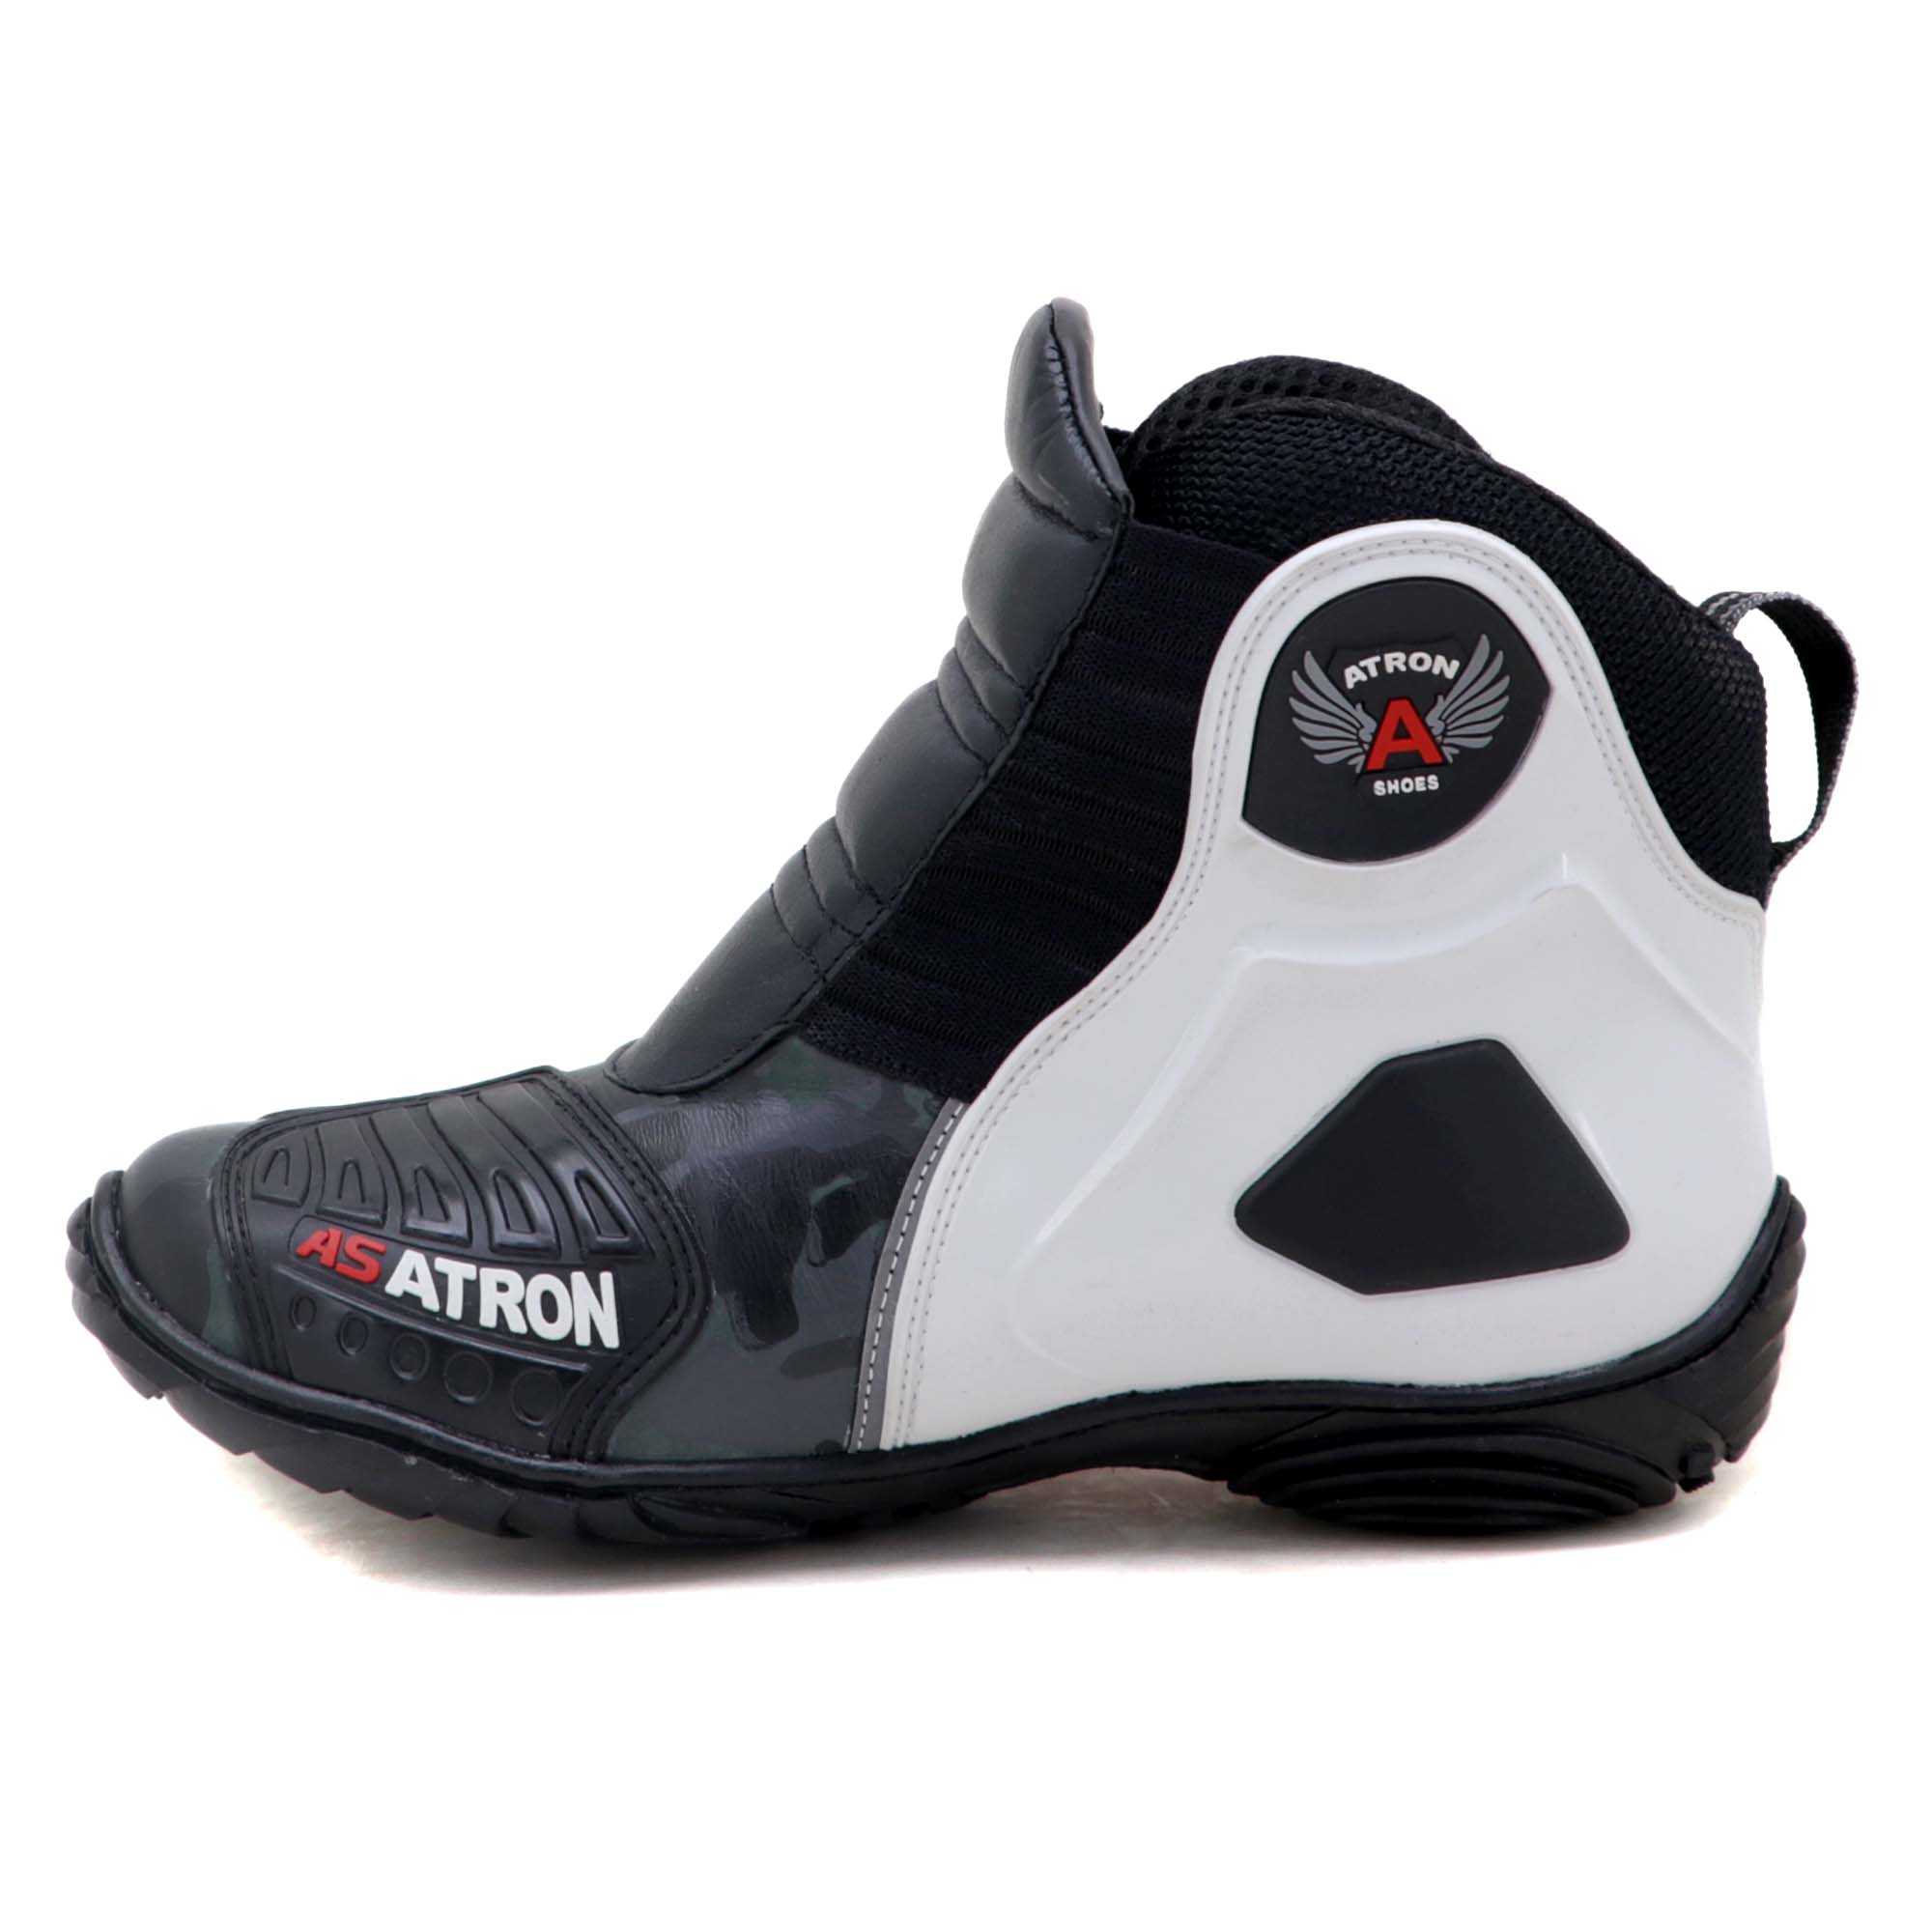 Bota motociclista Atron Shoes AS-HIGHWAY em couro legítimo semi-impermeável emborrachada Com elástico na cor Cinza Camuflado 408